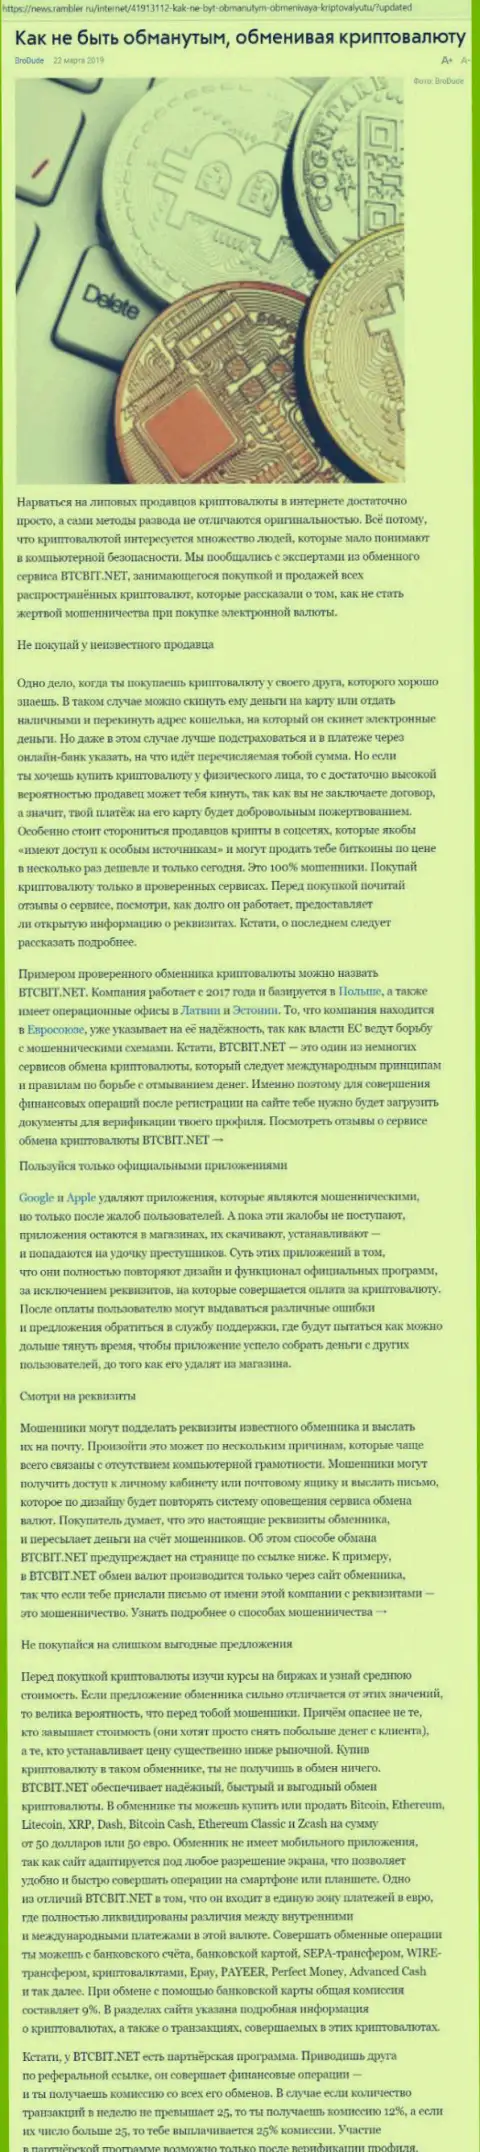 Статья об обменнике BTCBIT Net на news rambler ru